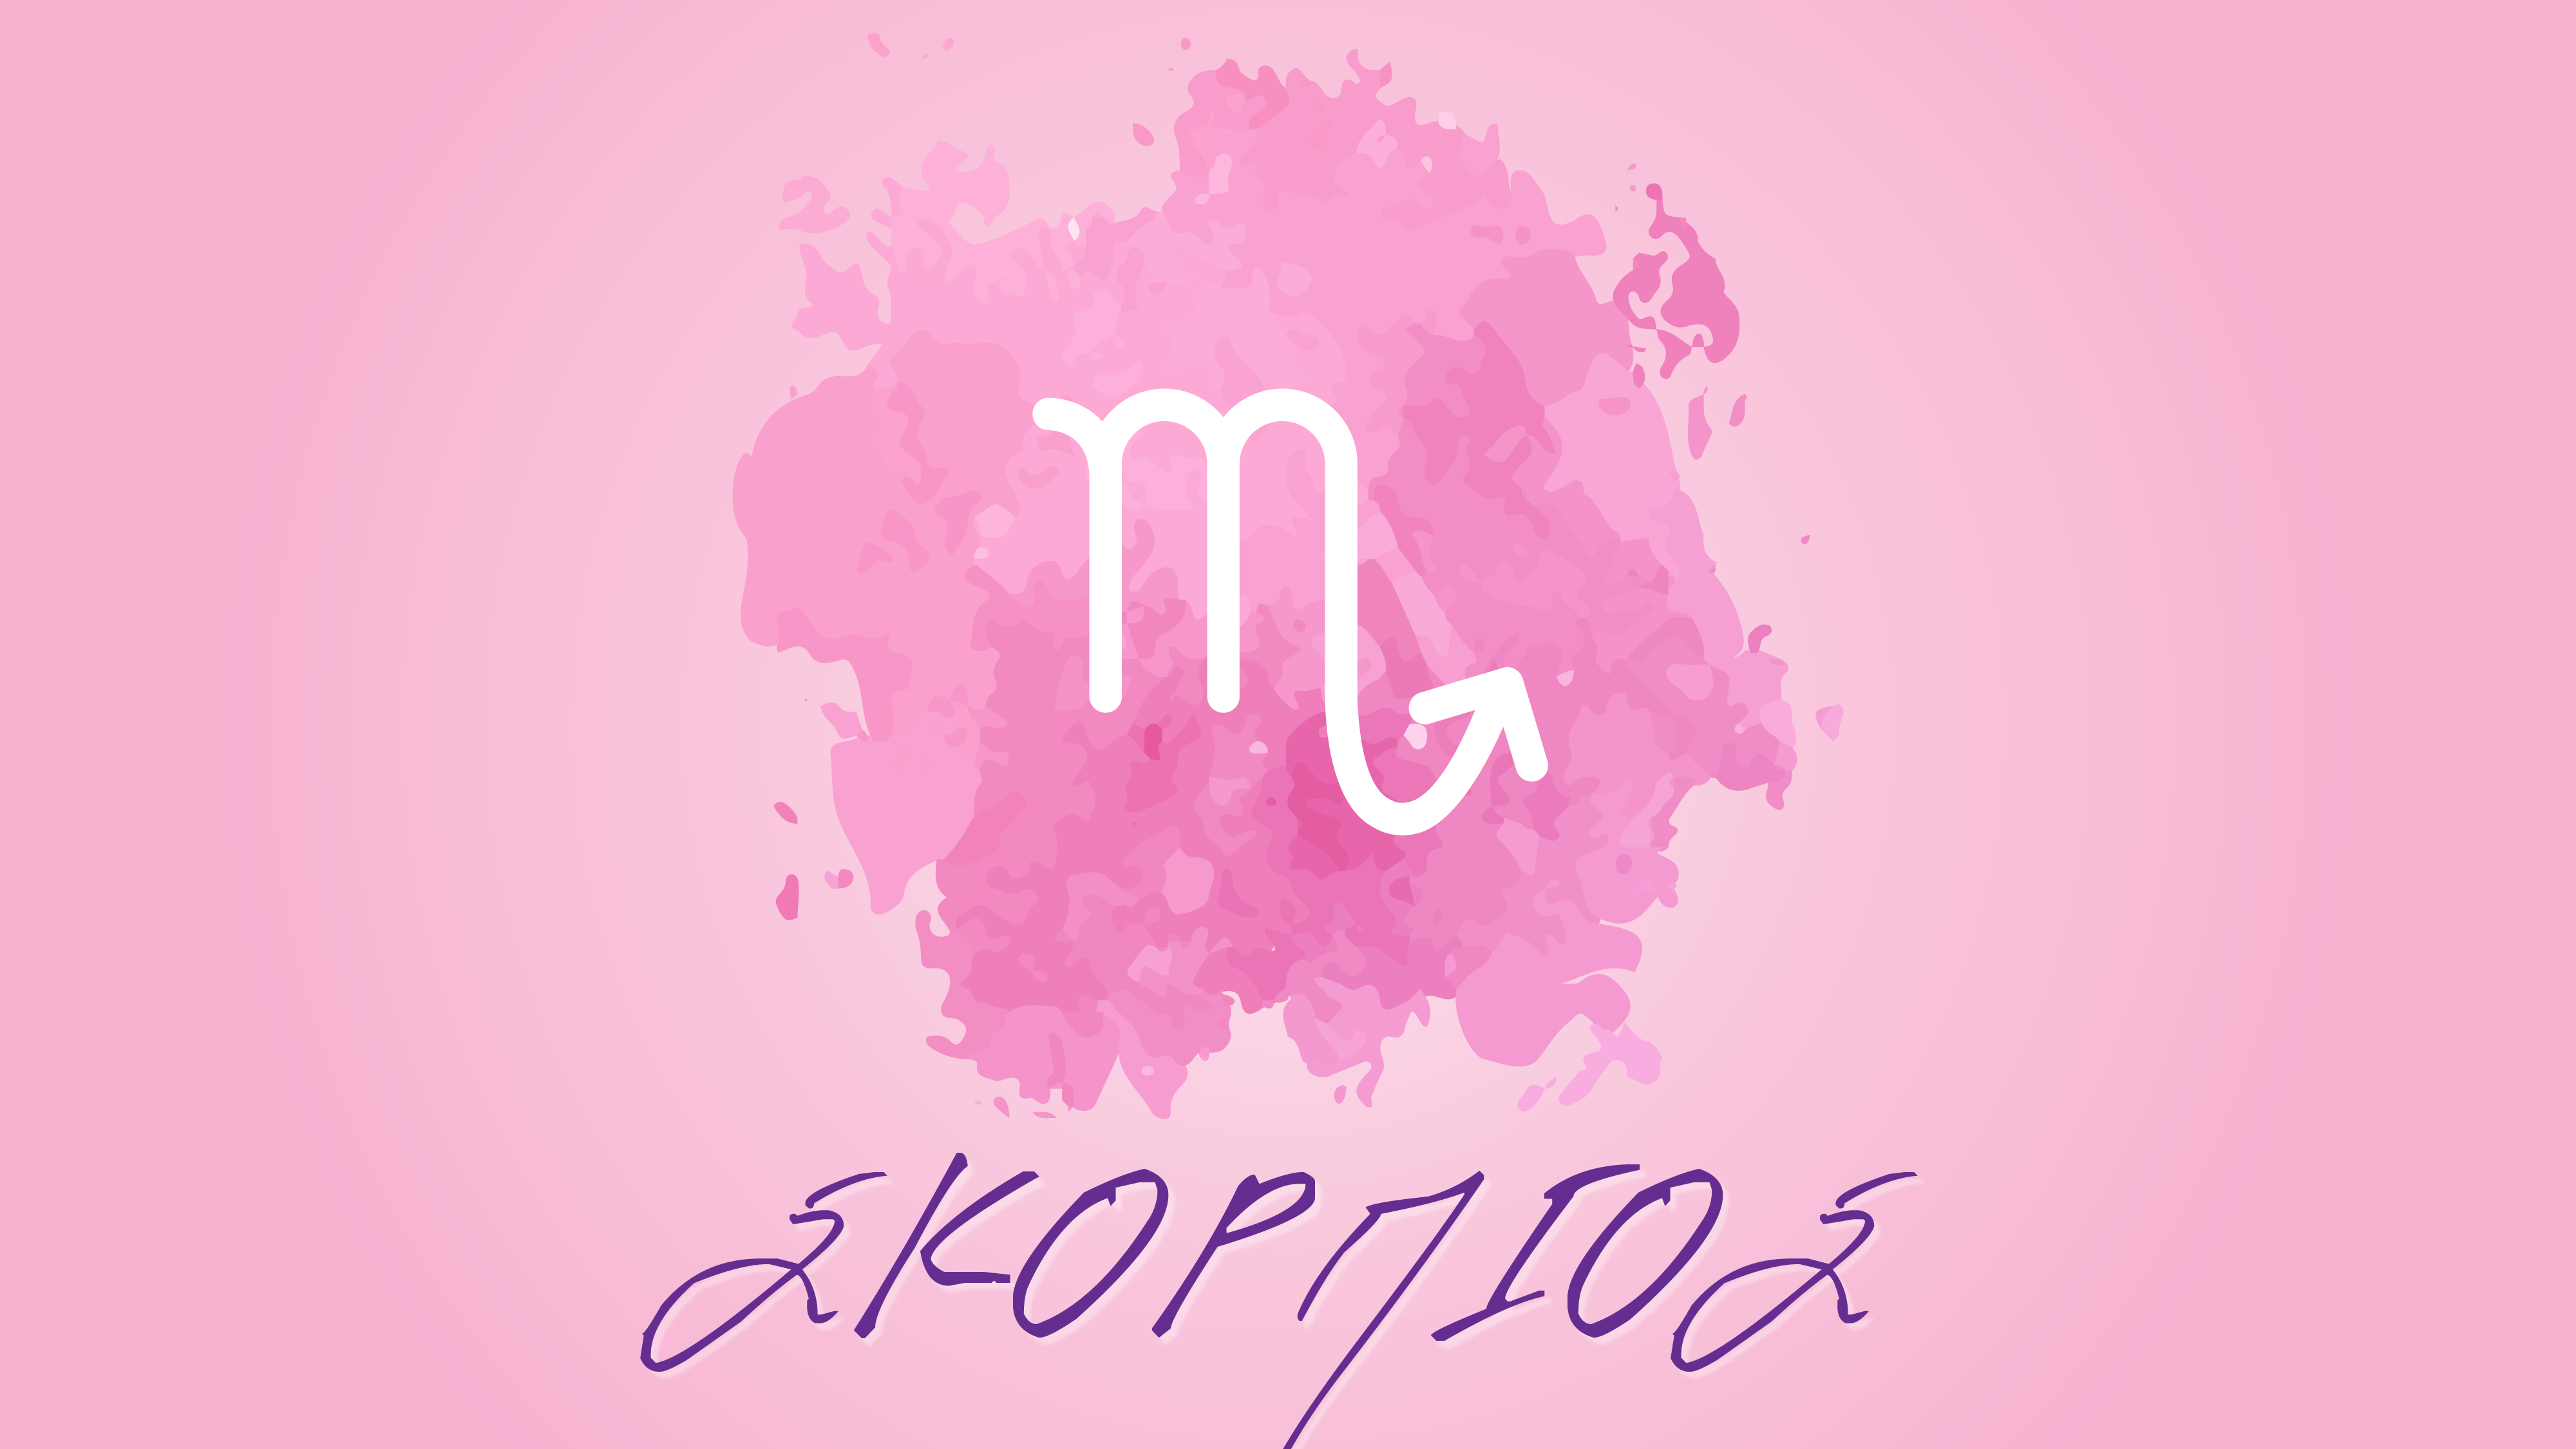 Σκορπιός – Μηνιαίες αστρολογικές προβλέψεις Απριλίου 2020 από την Αλίντα Κανάκη !